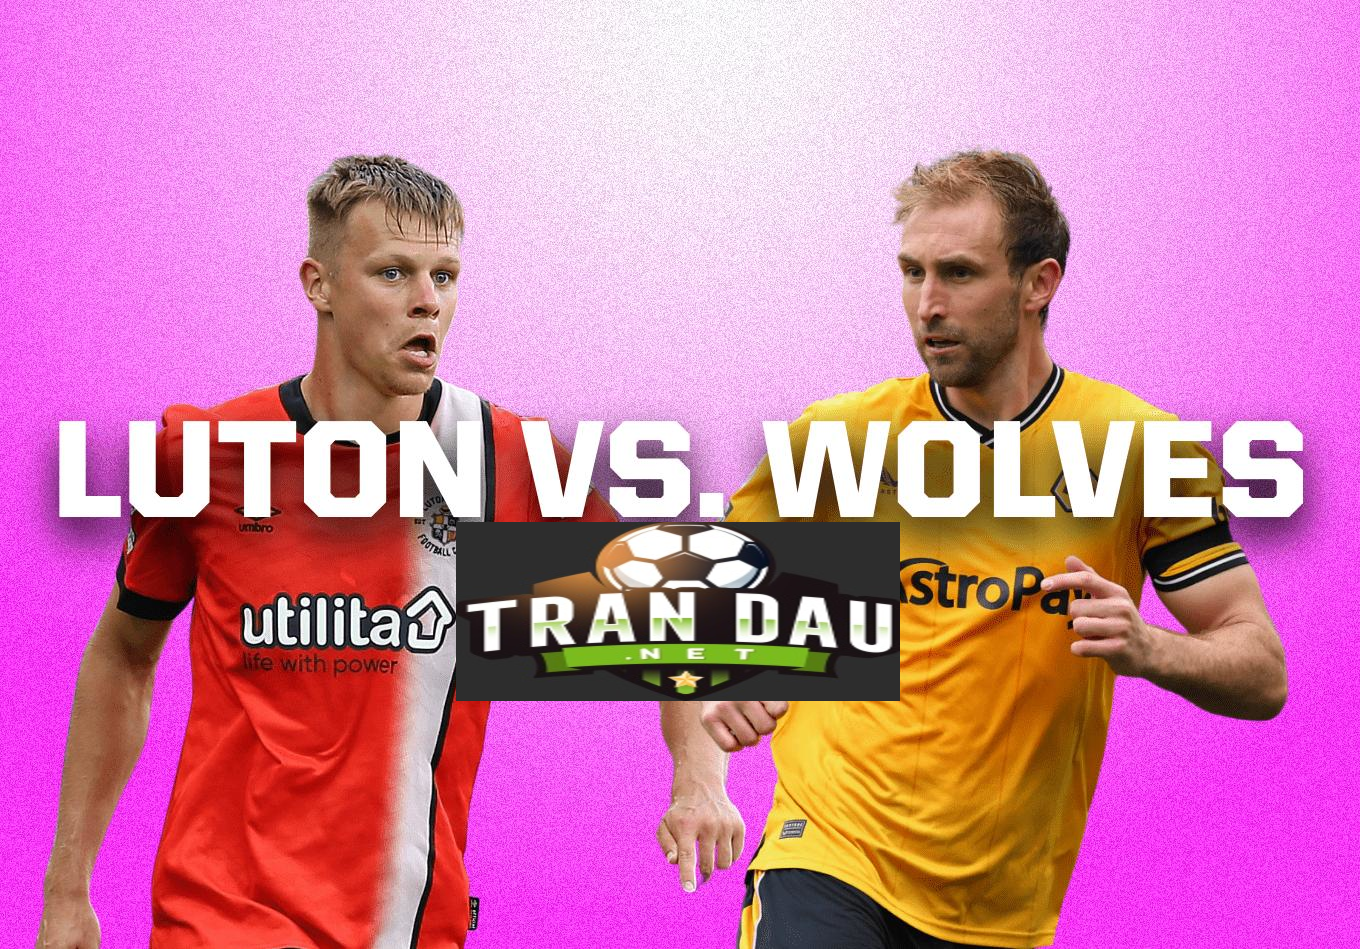 Video Clip Highlights:  Luton vs Wolves- PREMIER LEAGUE 23-24